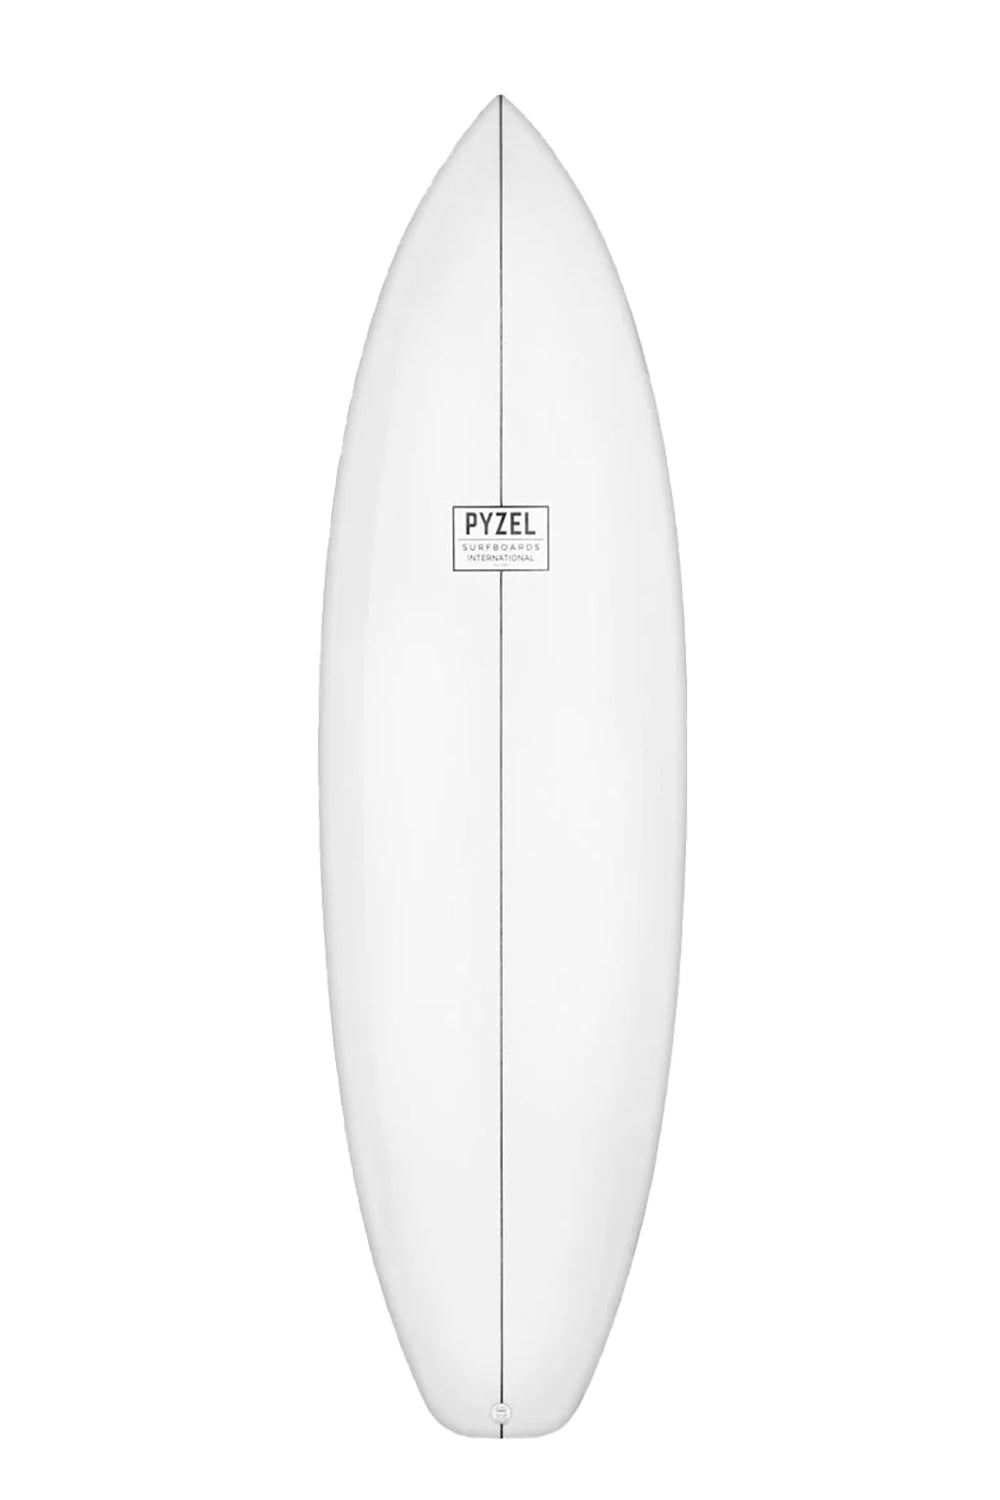 Pyzel Precious Surfboard